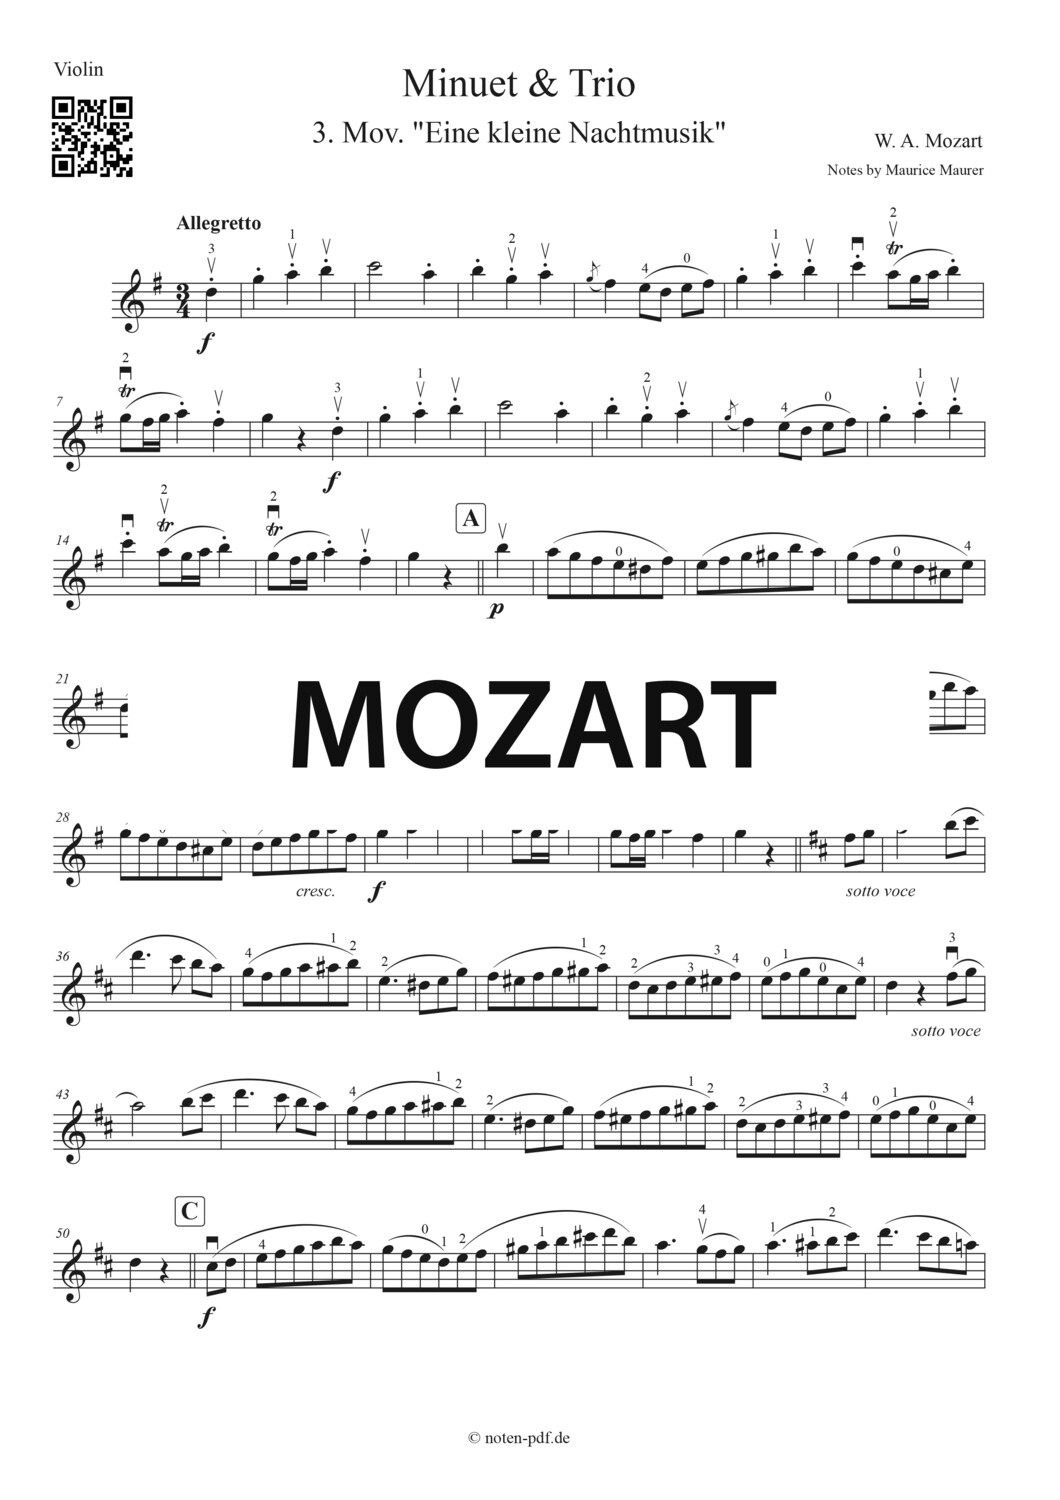 Mozart: Minuet & Trio from "Eine kleine Nachtmusik" + MP3